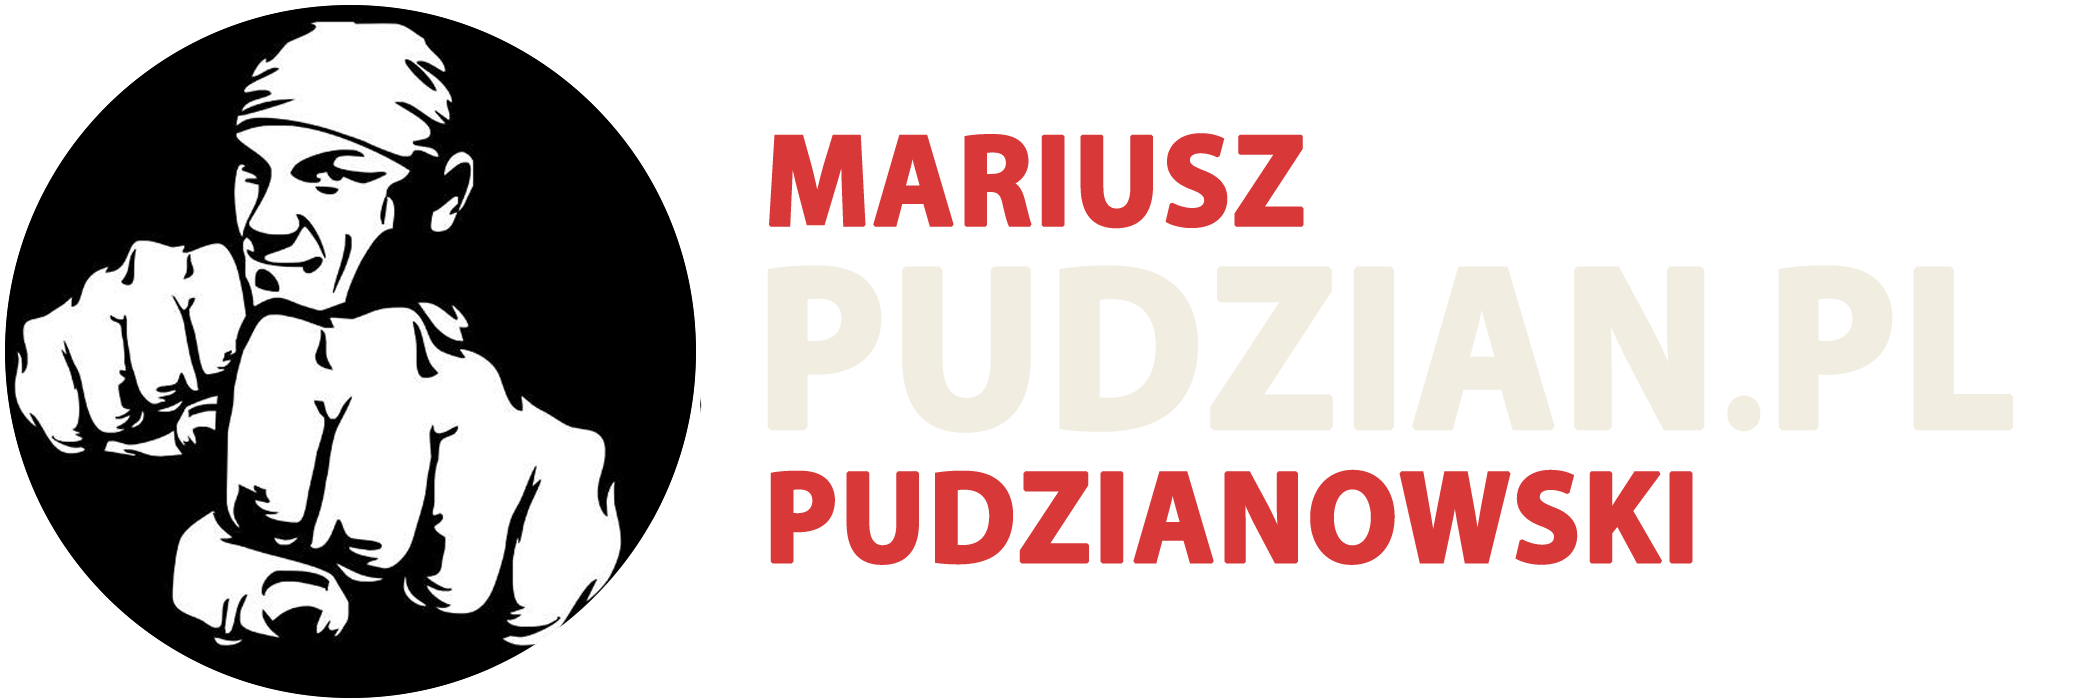 Mariusz Pudzianowski - Pudzian.pl